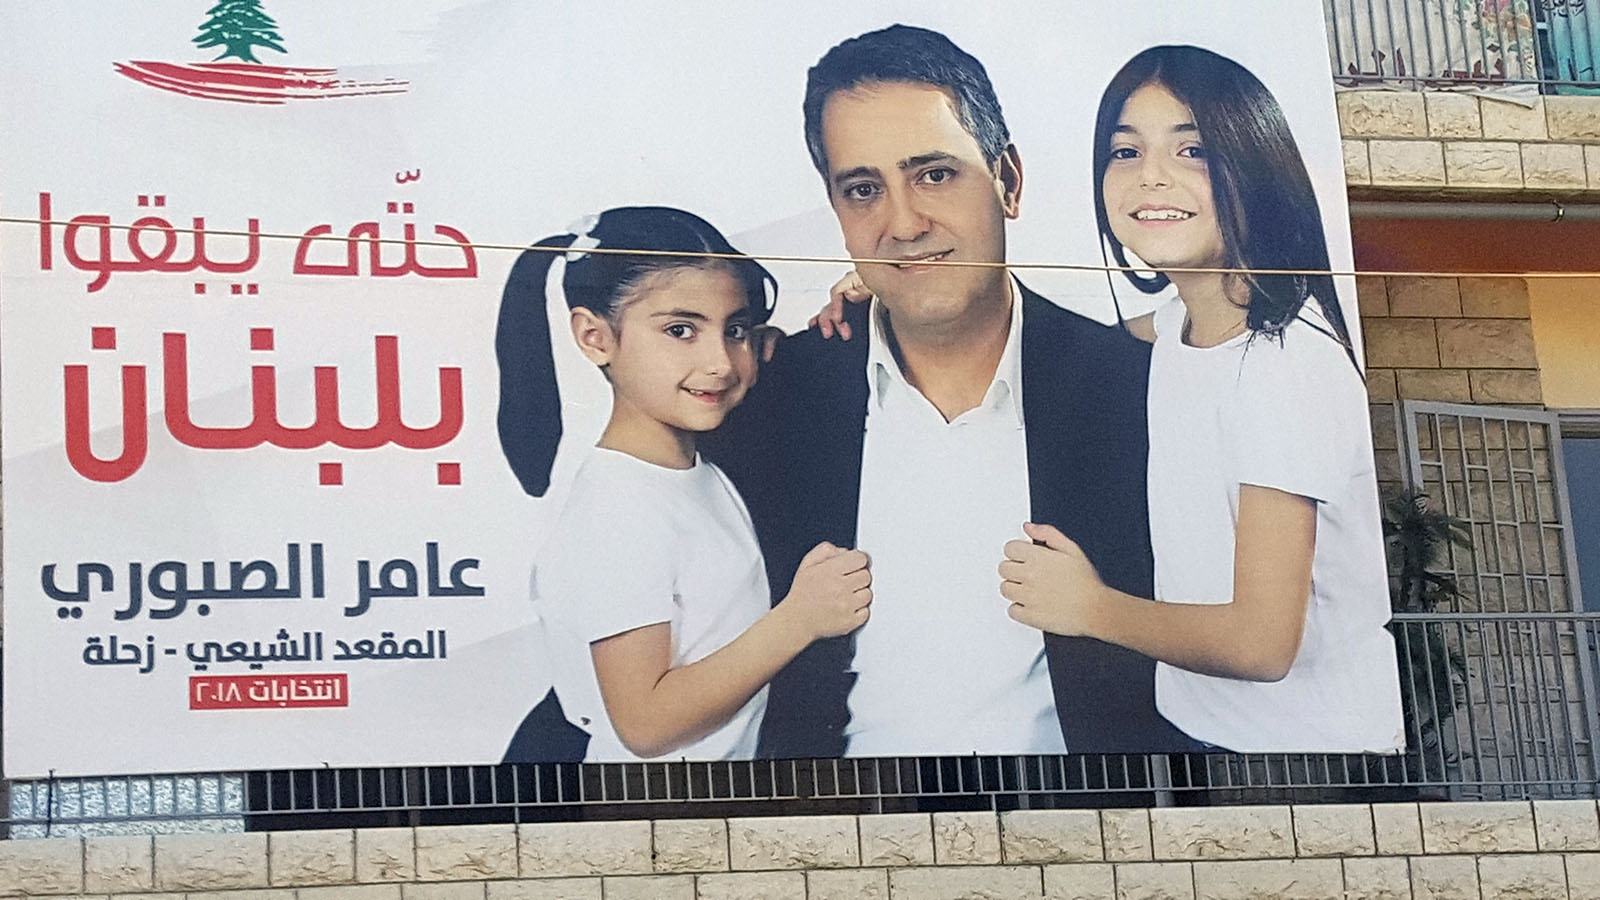 عامر الصبوري مرشح يخاف على ابنتيه